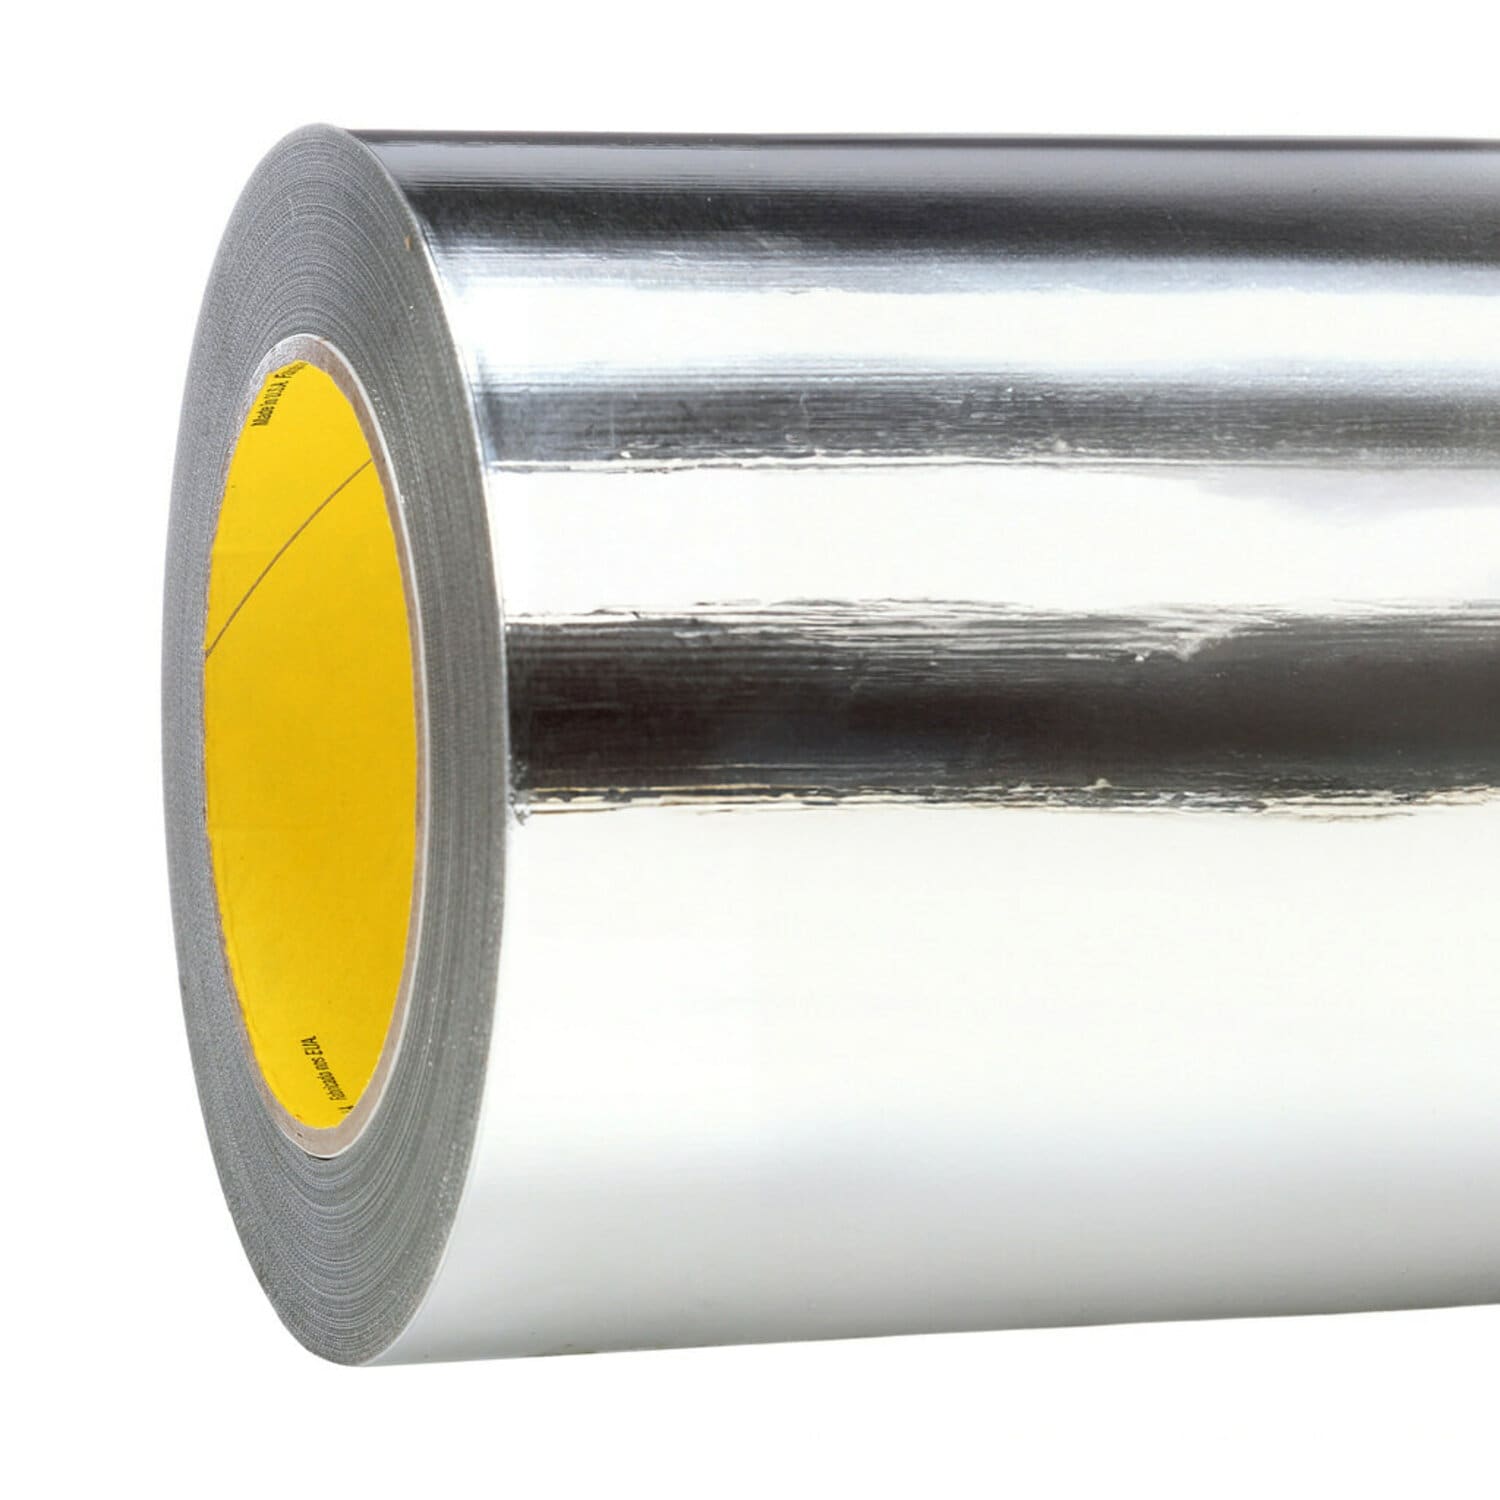 7010290687 - 3M Aluminum Foil Tape 427 LT80, Silver, 30 in x 60 yd, 4.6 mil, 1 roll
per case